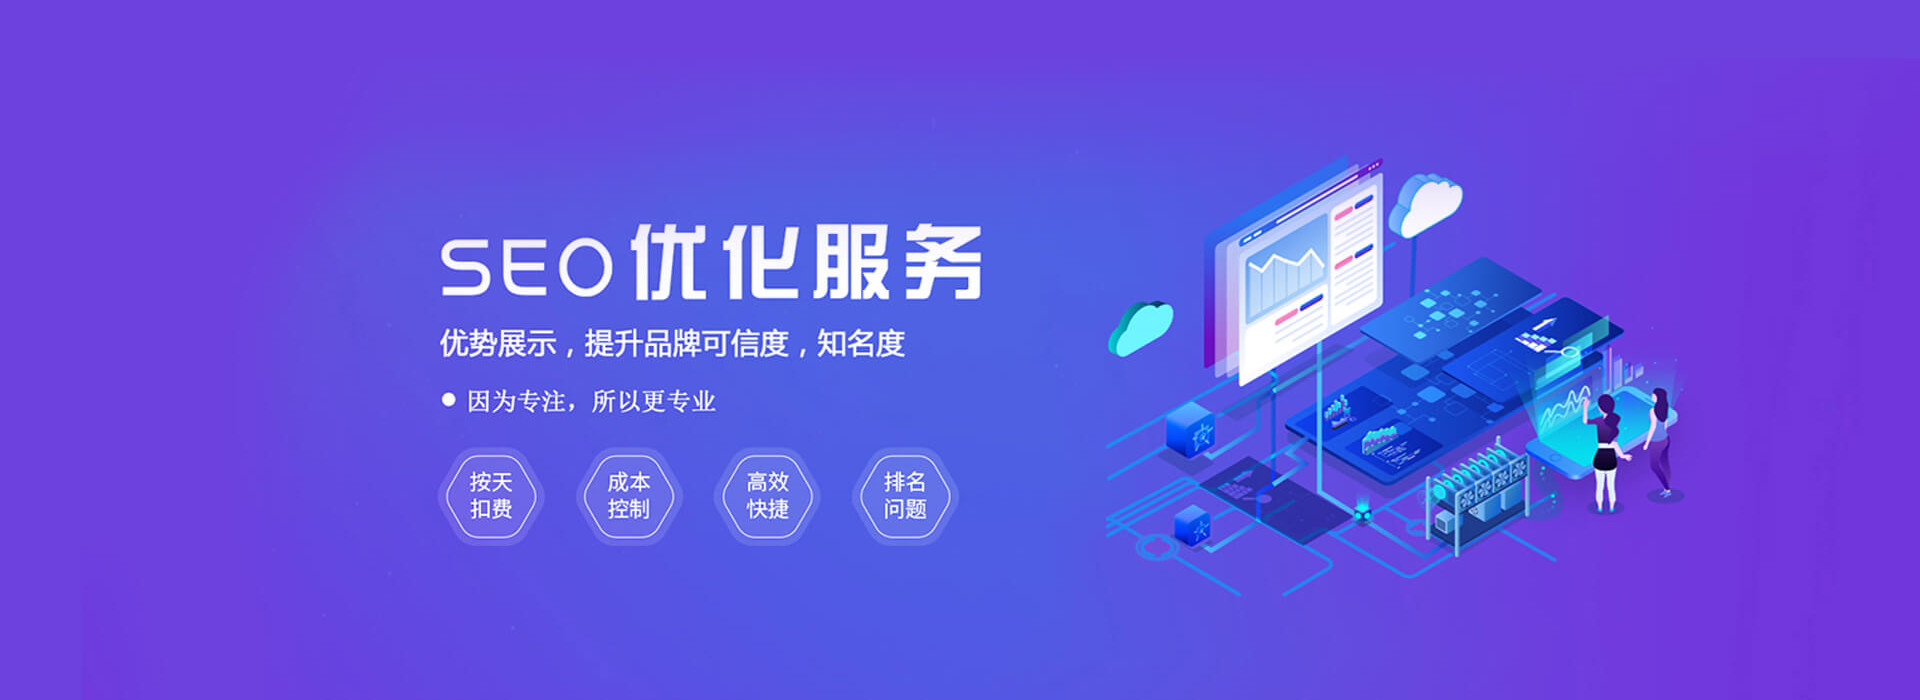 上海SEO公司告诉你网站流量下降的原因有哪些?